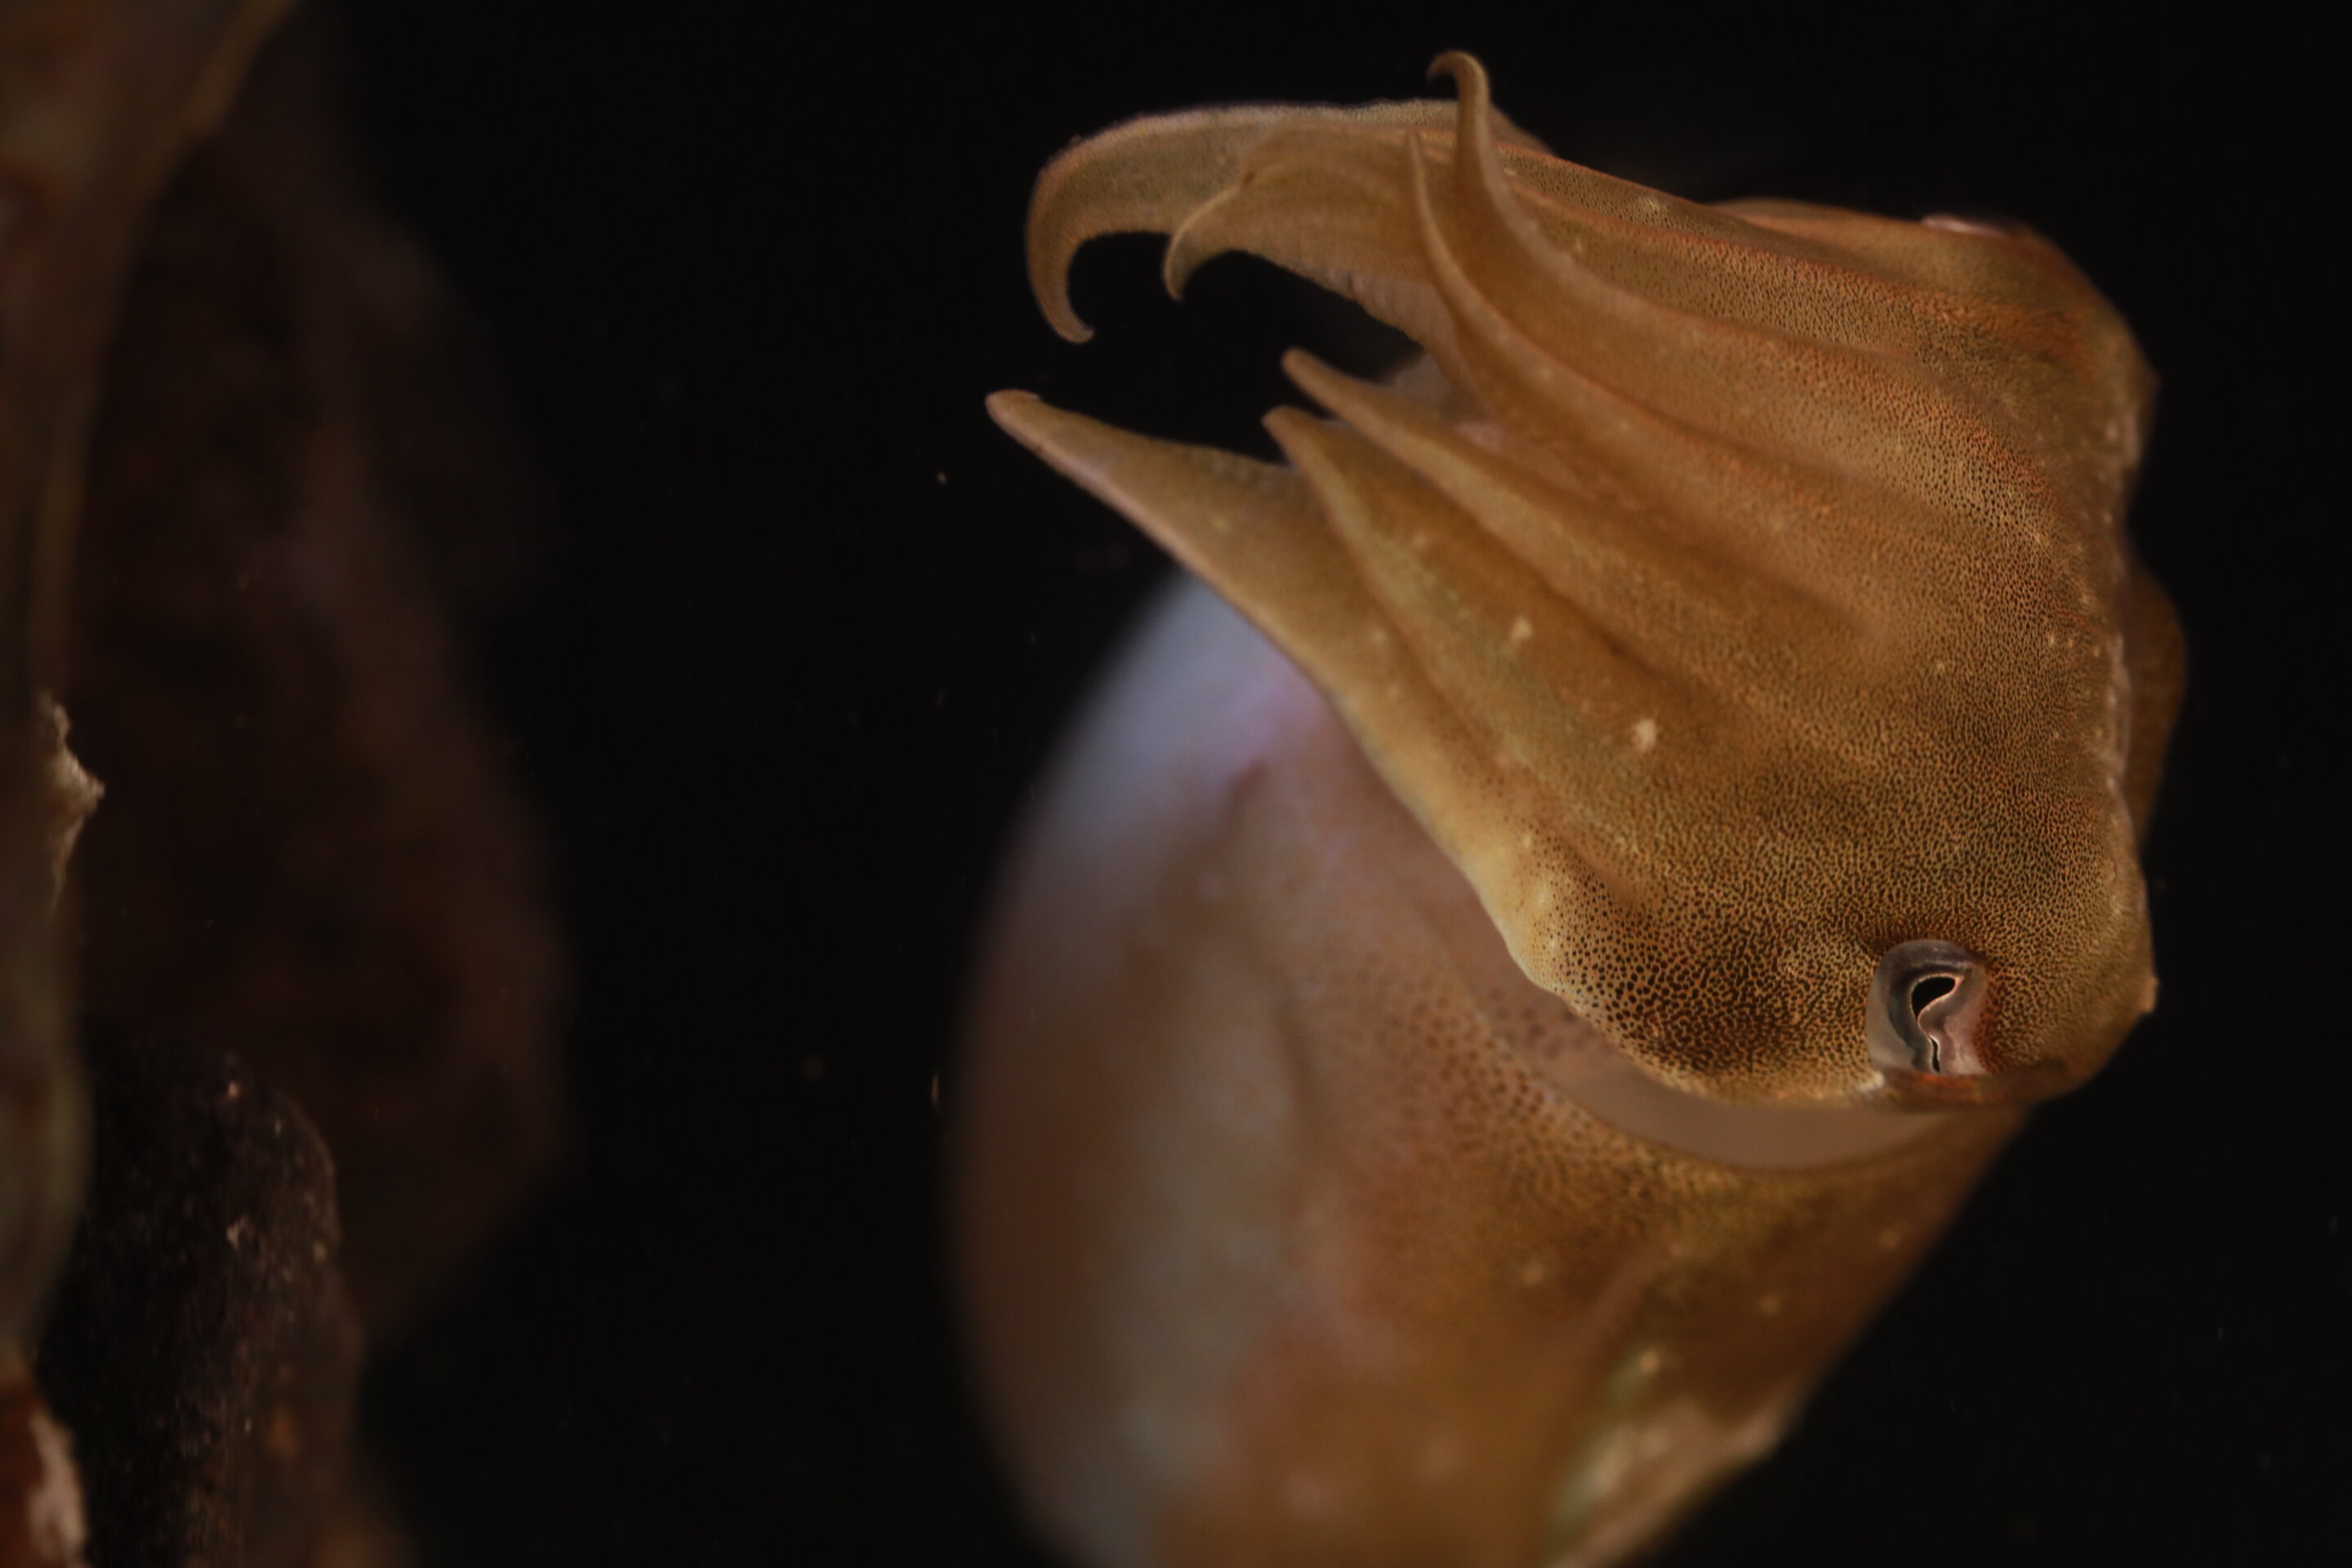 墨鱼大脑的新图谱可以解释海洋动物如何以及为什么使用其独特的伪装能力